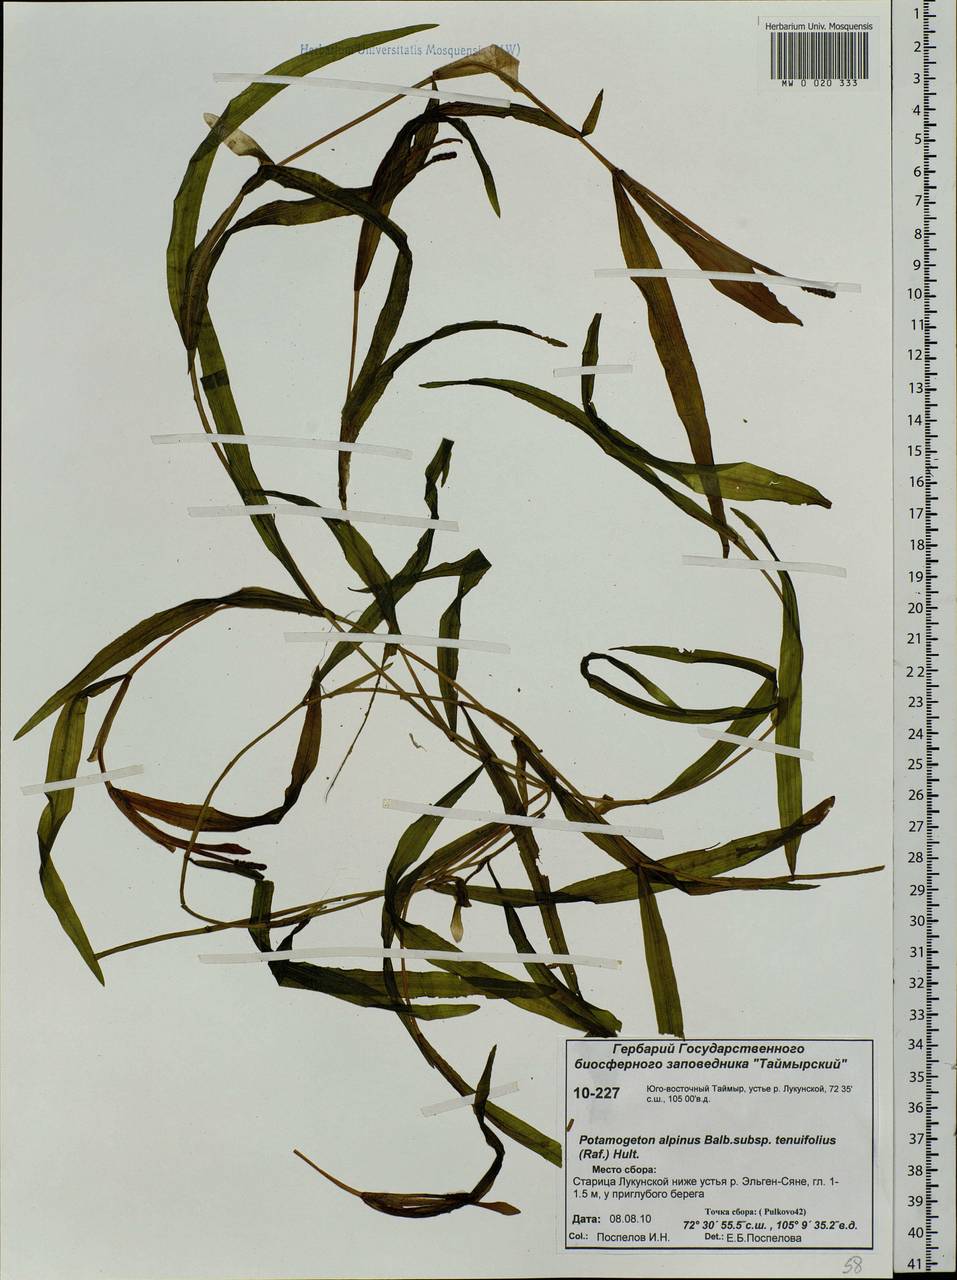 Potamogeton alpinus subsp. tenuifolius (Raf.) Hultén, Siberia, Central Siberia (S3) (Russia)